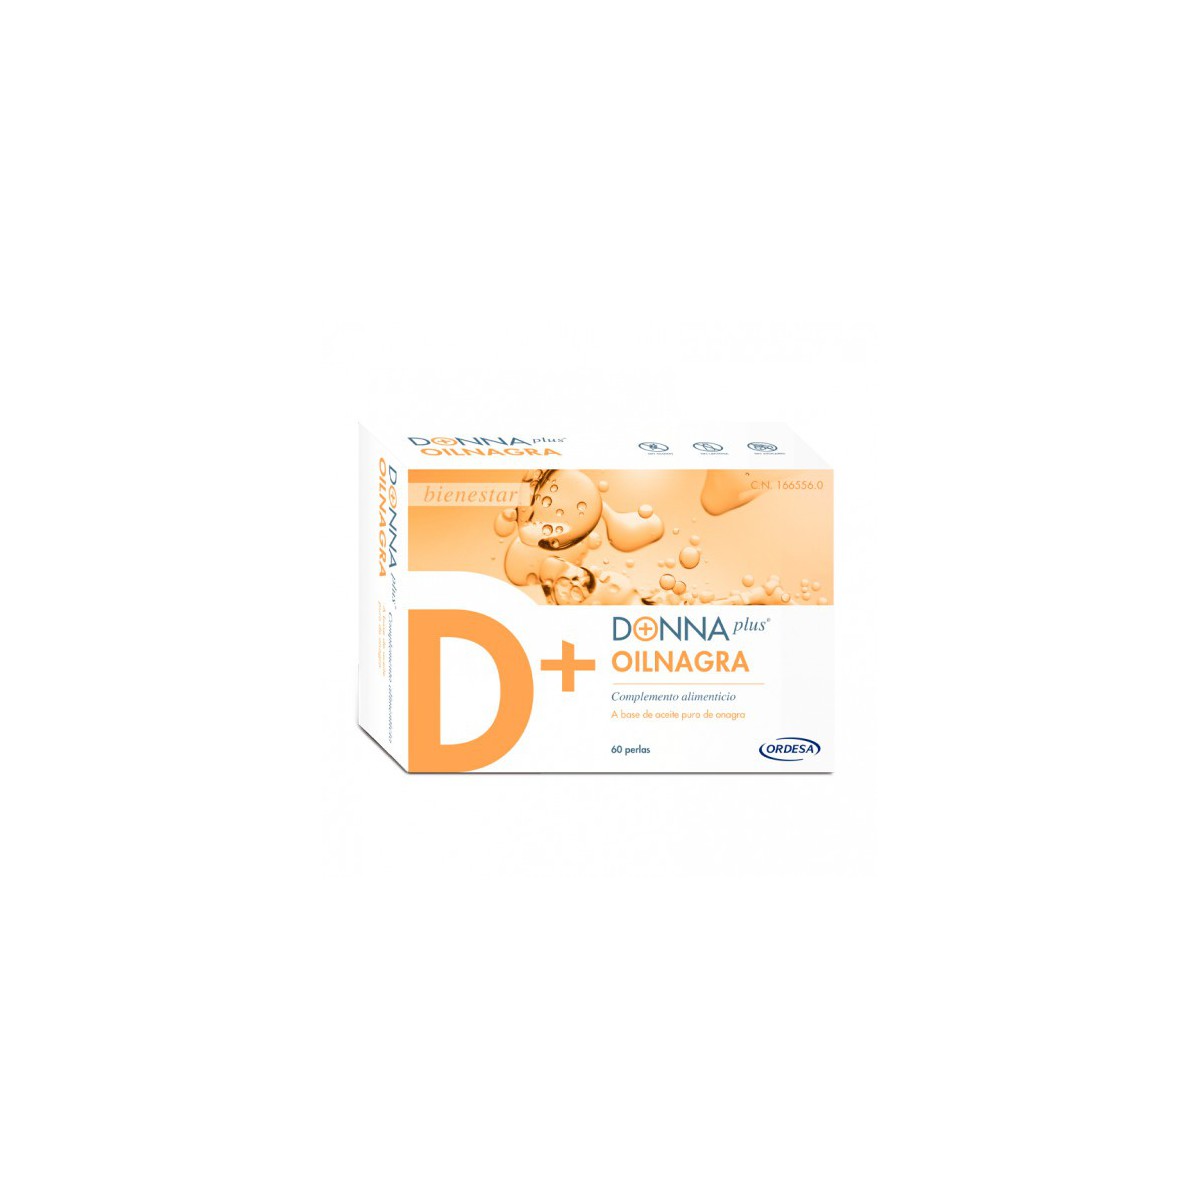 DonnaPlus+ Aceite de Onagra 60 perlas